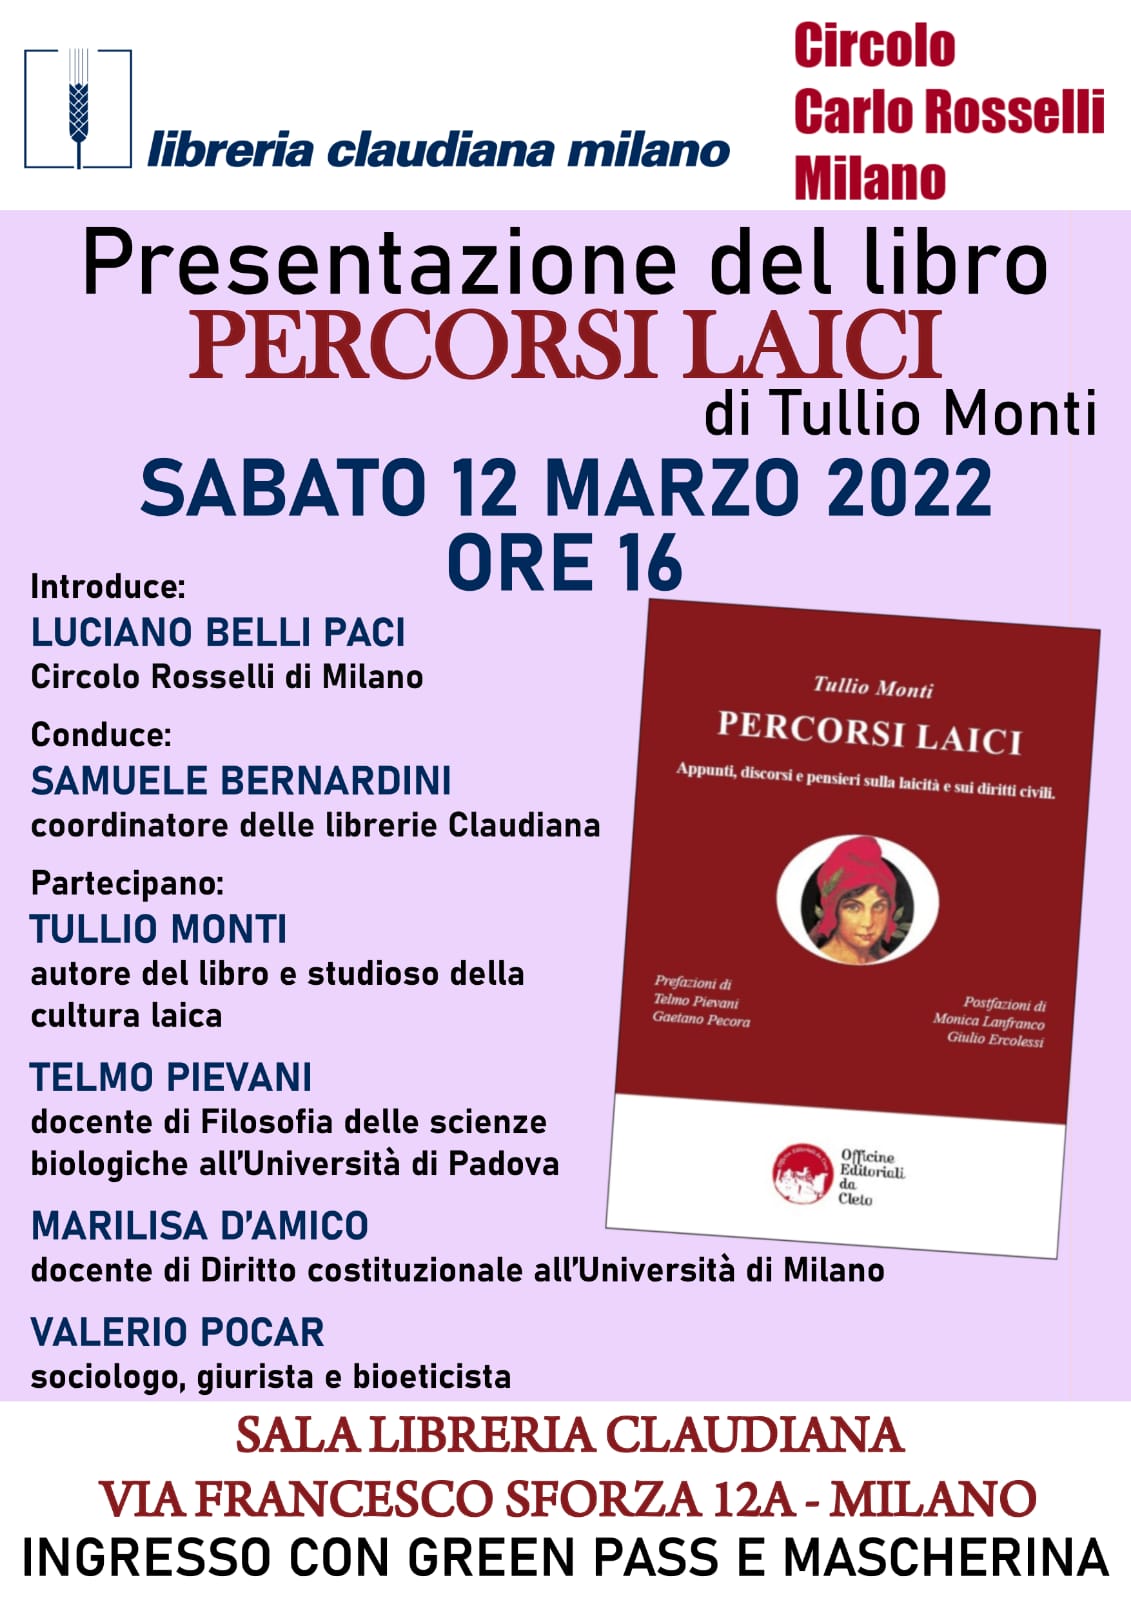 La locandina della presentazione del libro PERCORSI LAICI di Milano